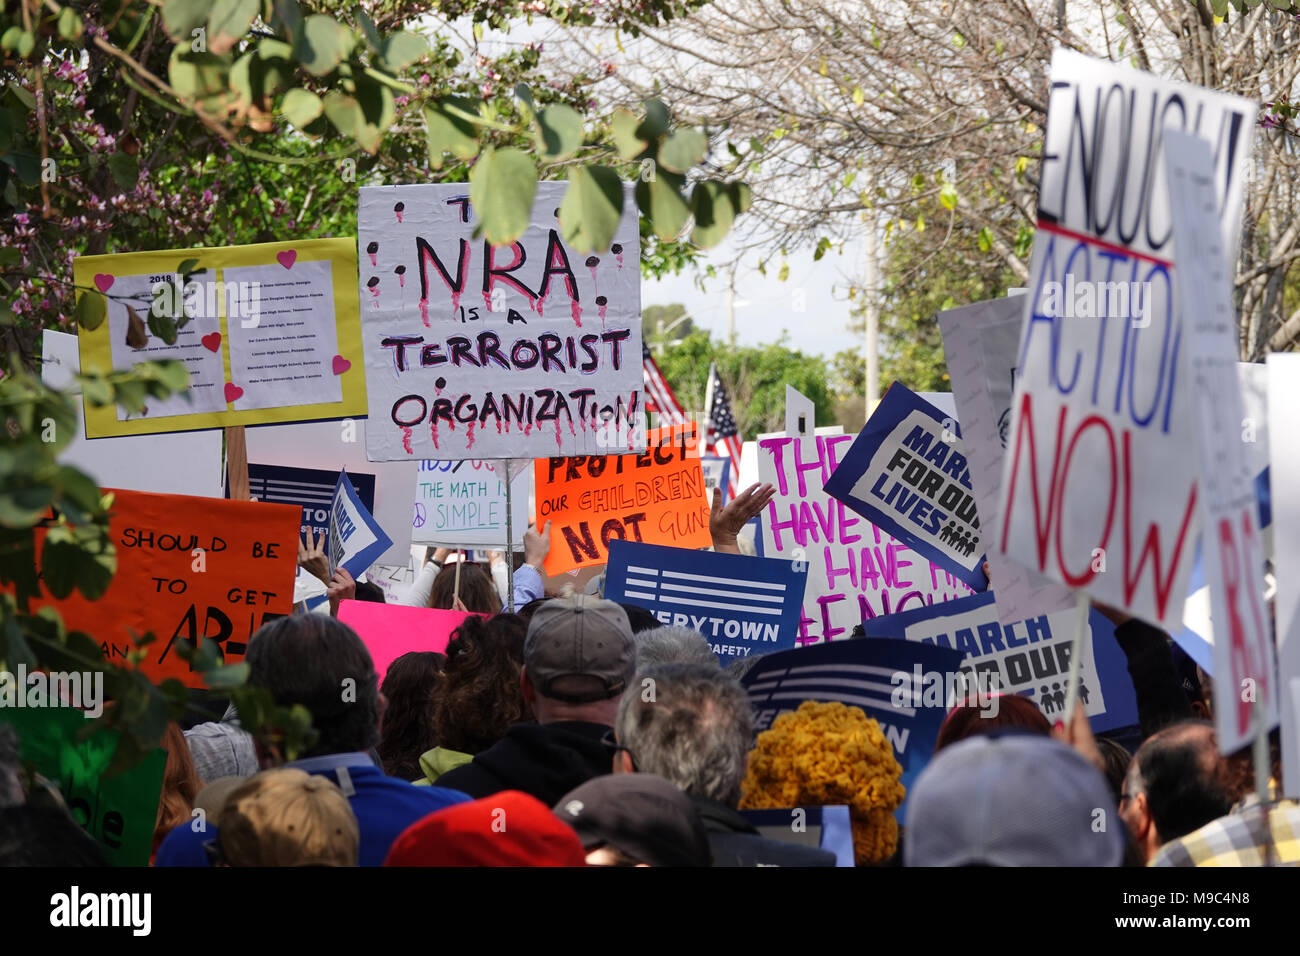 Burbank, CA, USA - 24. März 2018: Bei einer der landesweiten Demonstrationen „Marsch für unser Leben“ werden verschiedene Zeichen gezeigt, die gesetzgeberische Maßnahmen zur Bekämpfung von Waffengewalt und zur Erhöhung der Sicherheit in der Schule fordern. Quelle: Kilmer Media/Alamy Live News Stockfoto